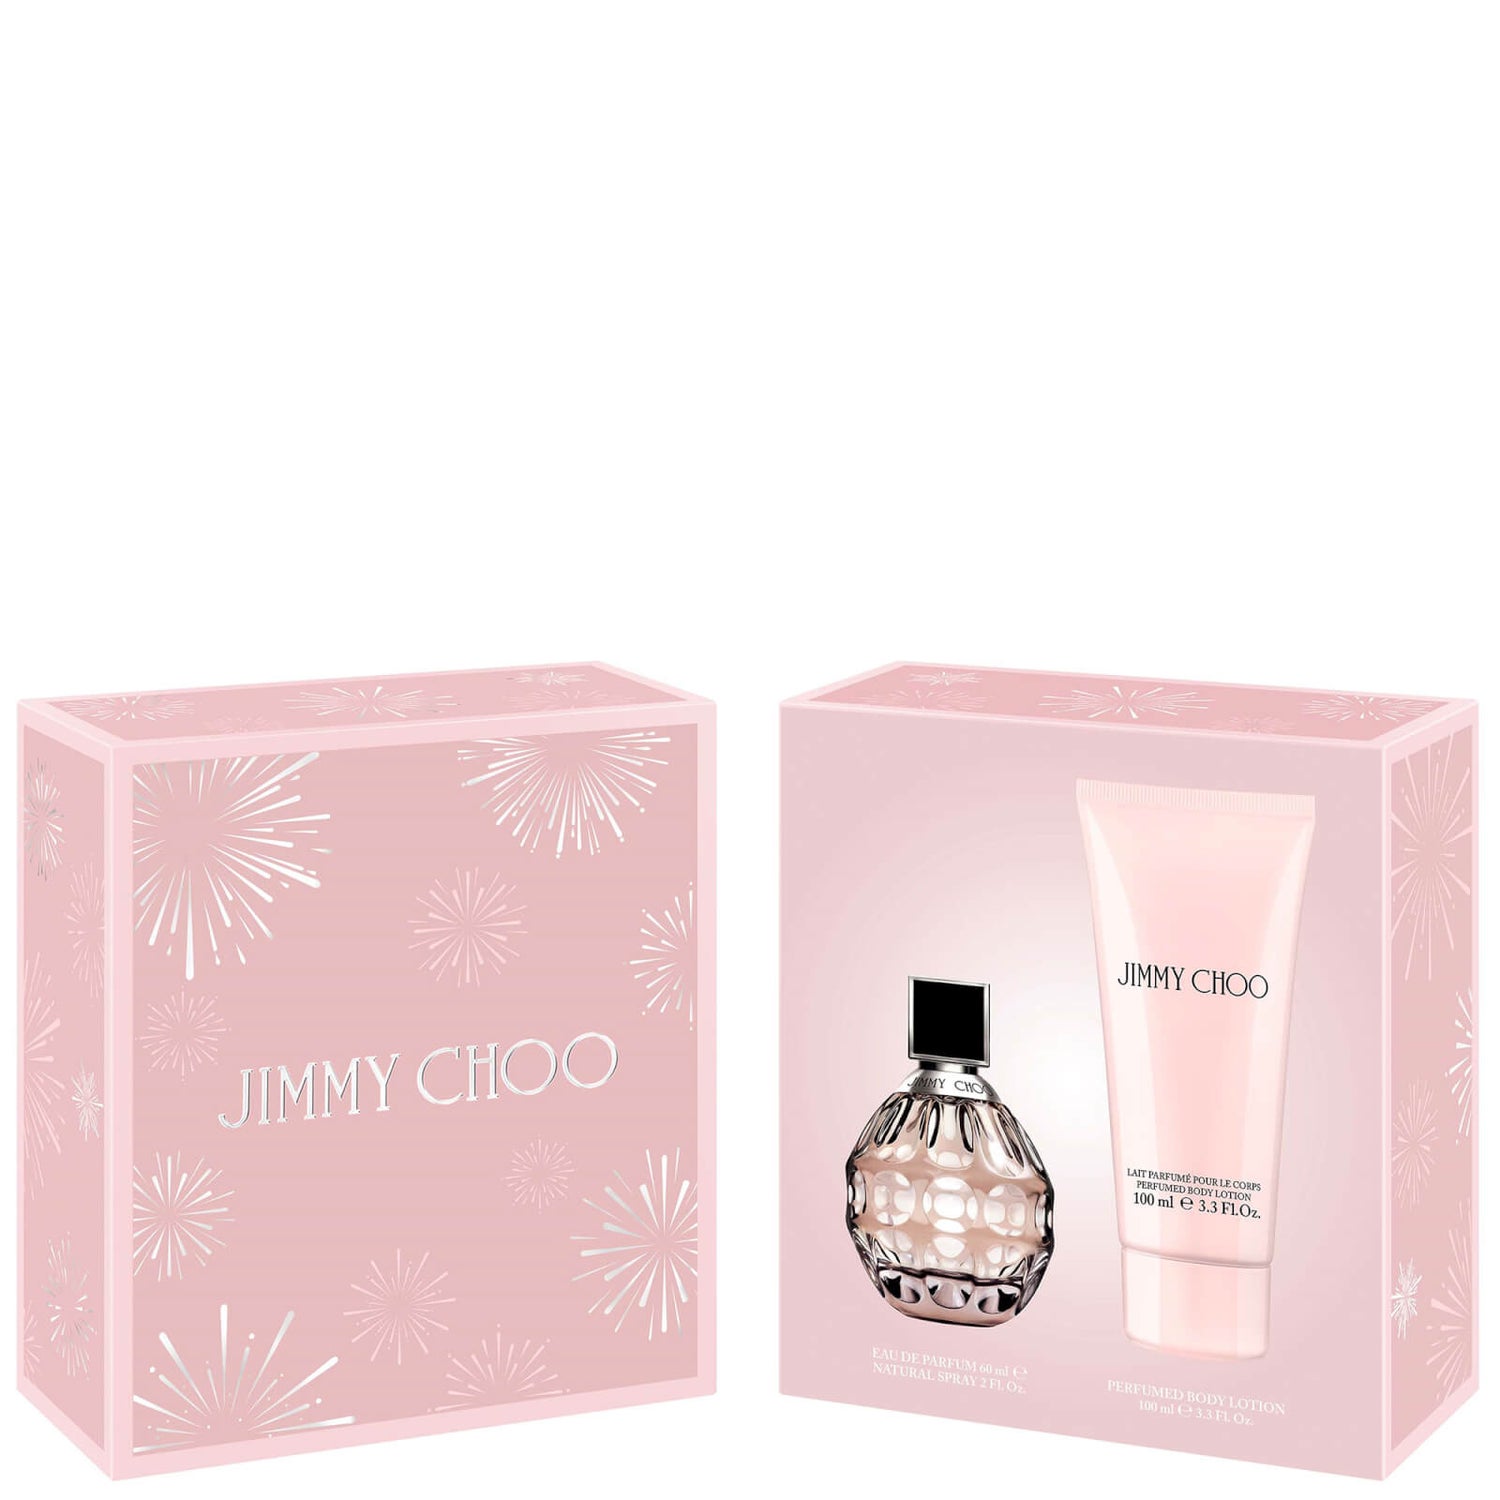 Jimmy Choo Eau De Parfum and Body Lotion Set